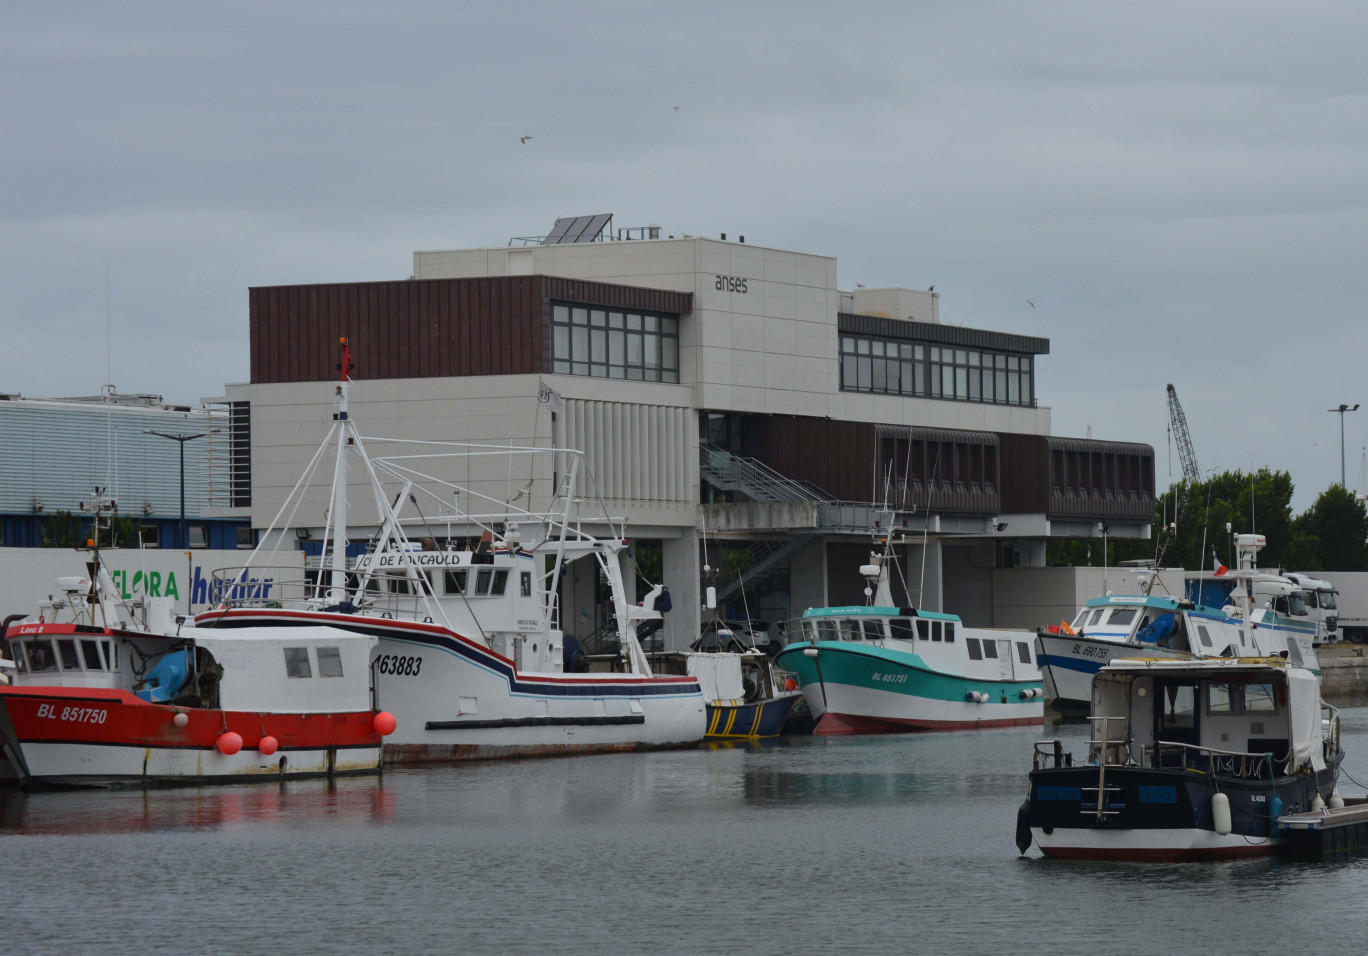 Le laboratoire de Boulogne est implanté sur le quai, directement en lien avec l’industrie de la pêche.